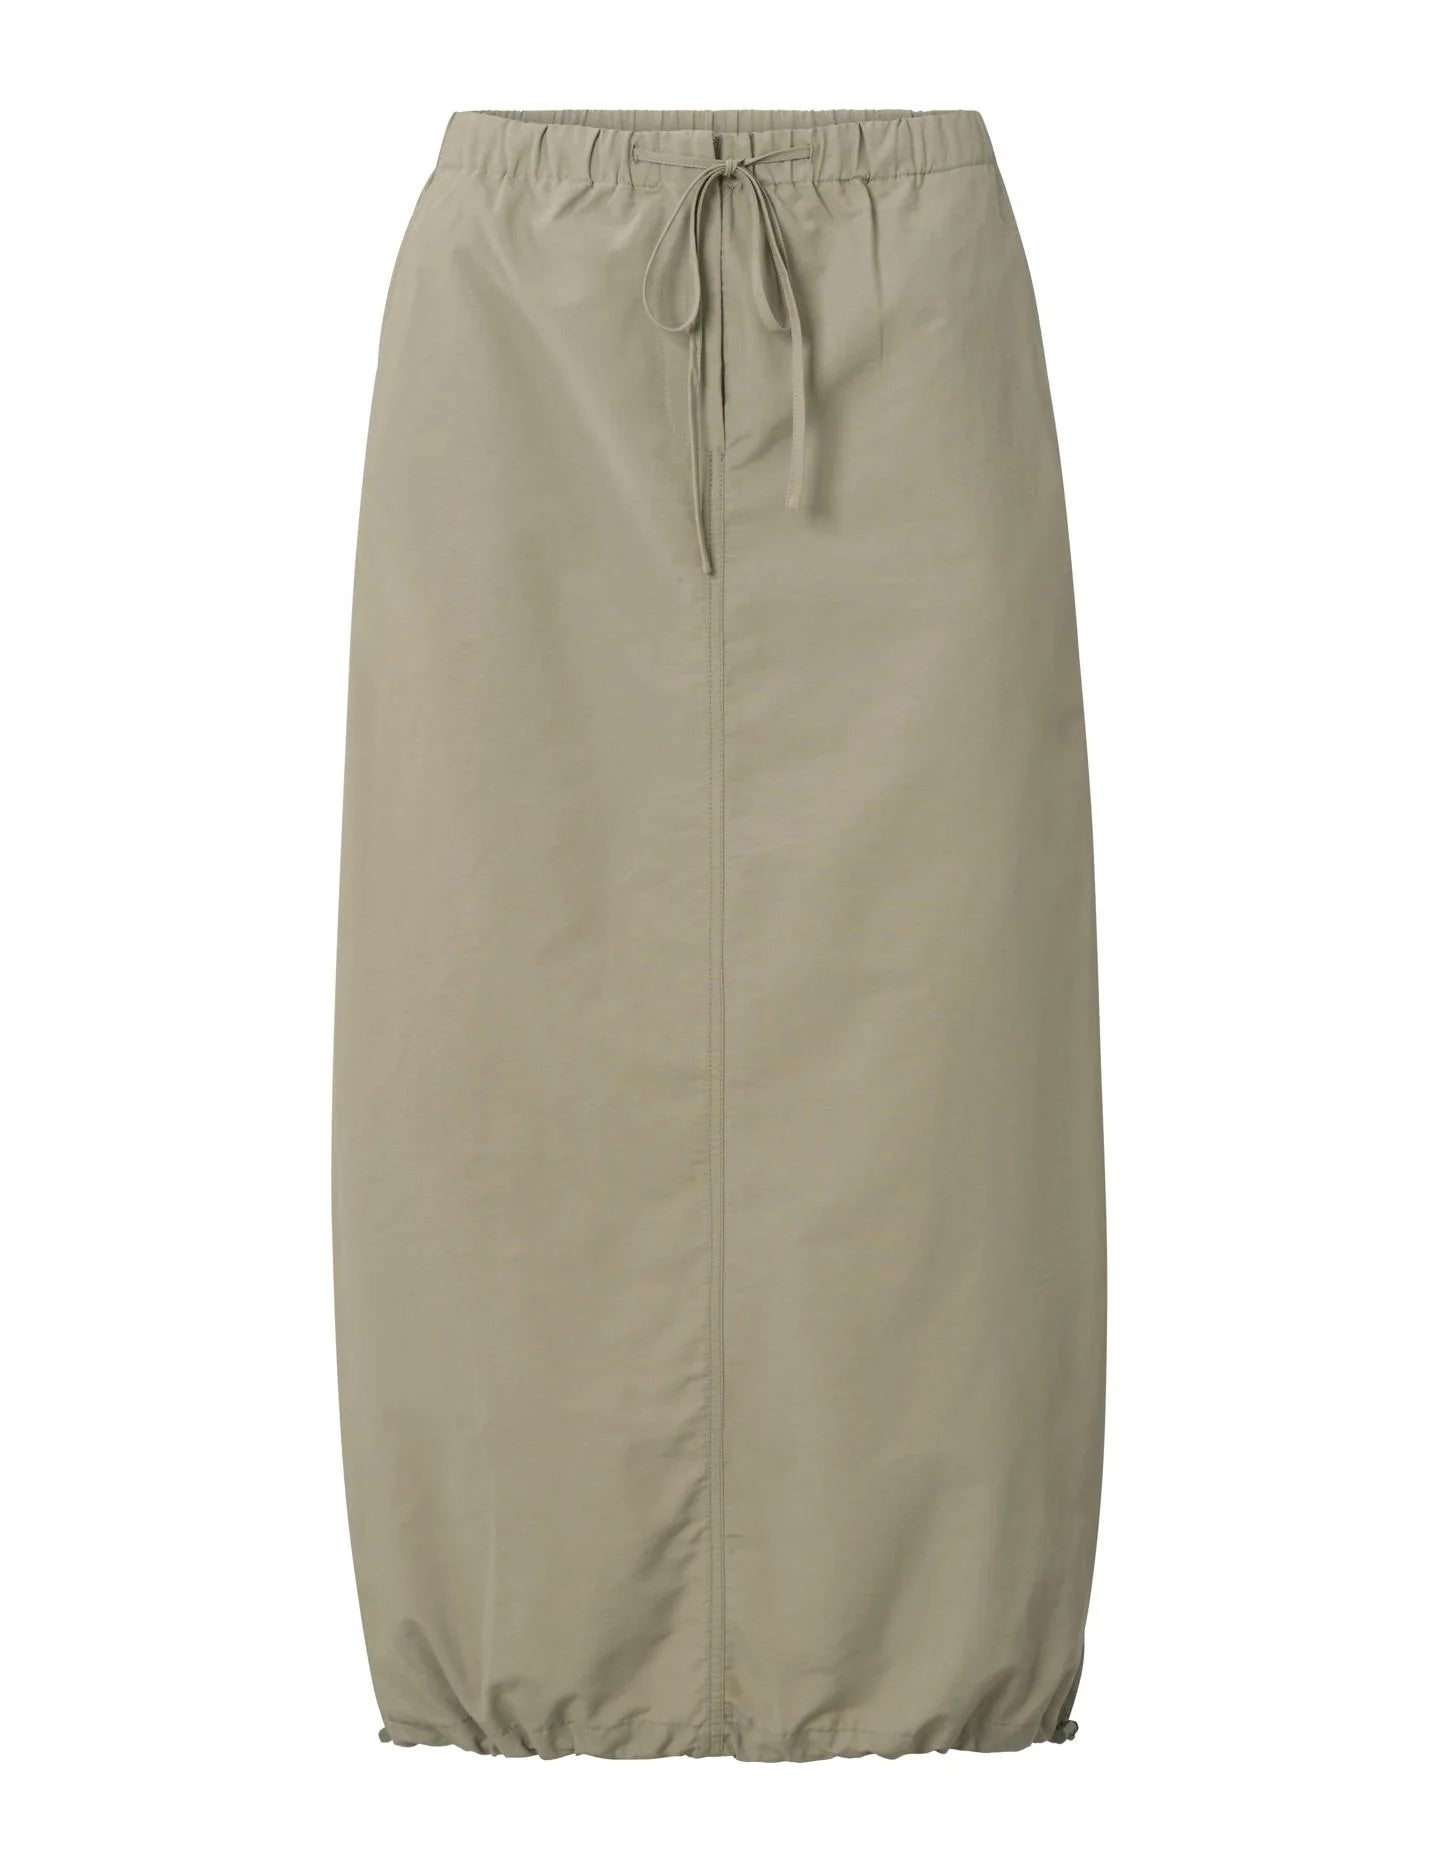 cargo-midi-skirt-with-pockets-and-a-drawstring-in-nylon-winter-twig-beige_542fa546-de85-4736-a462-6b71a8ddcc3c_2880x_jpg.jpg